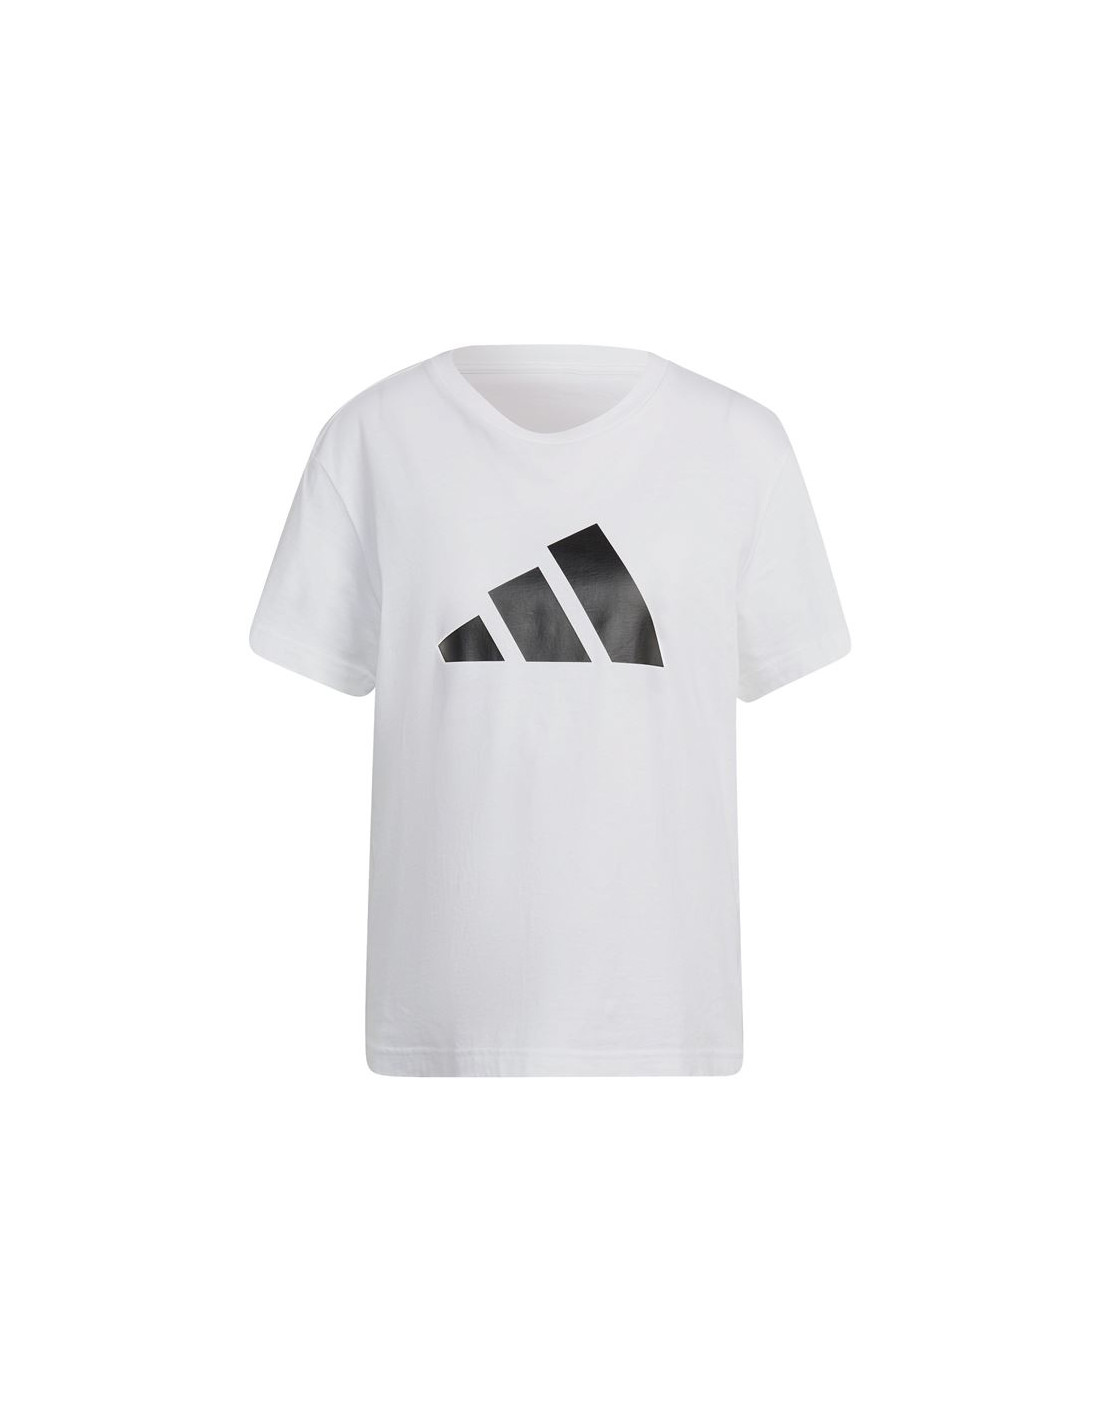 Camiseta adidas sportswear future icons w white